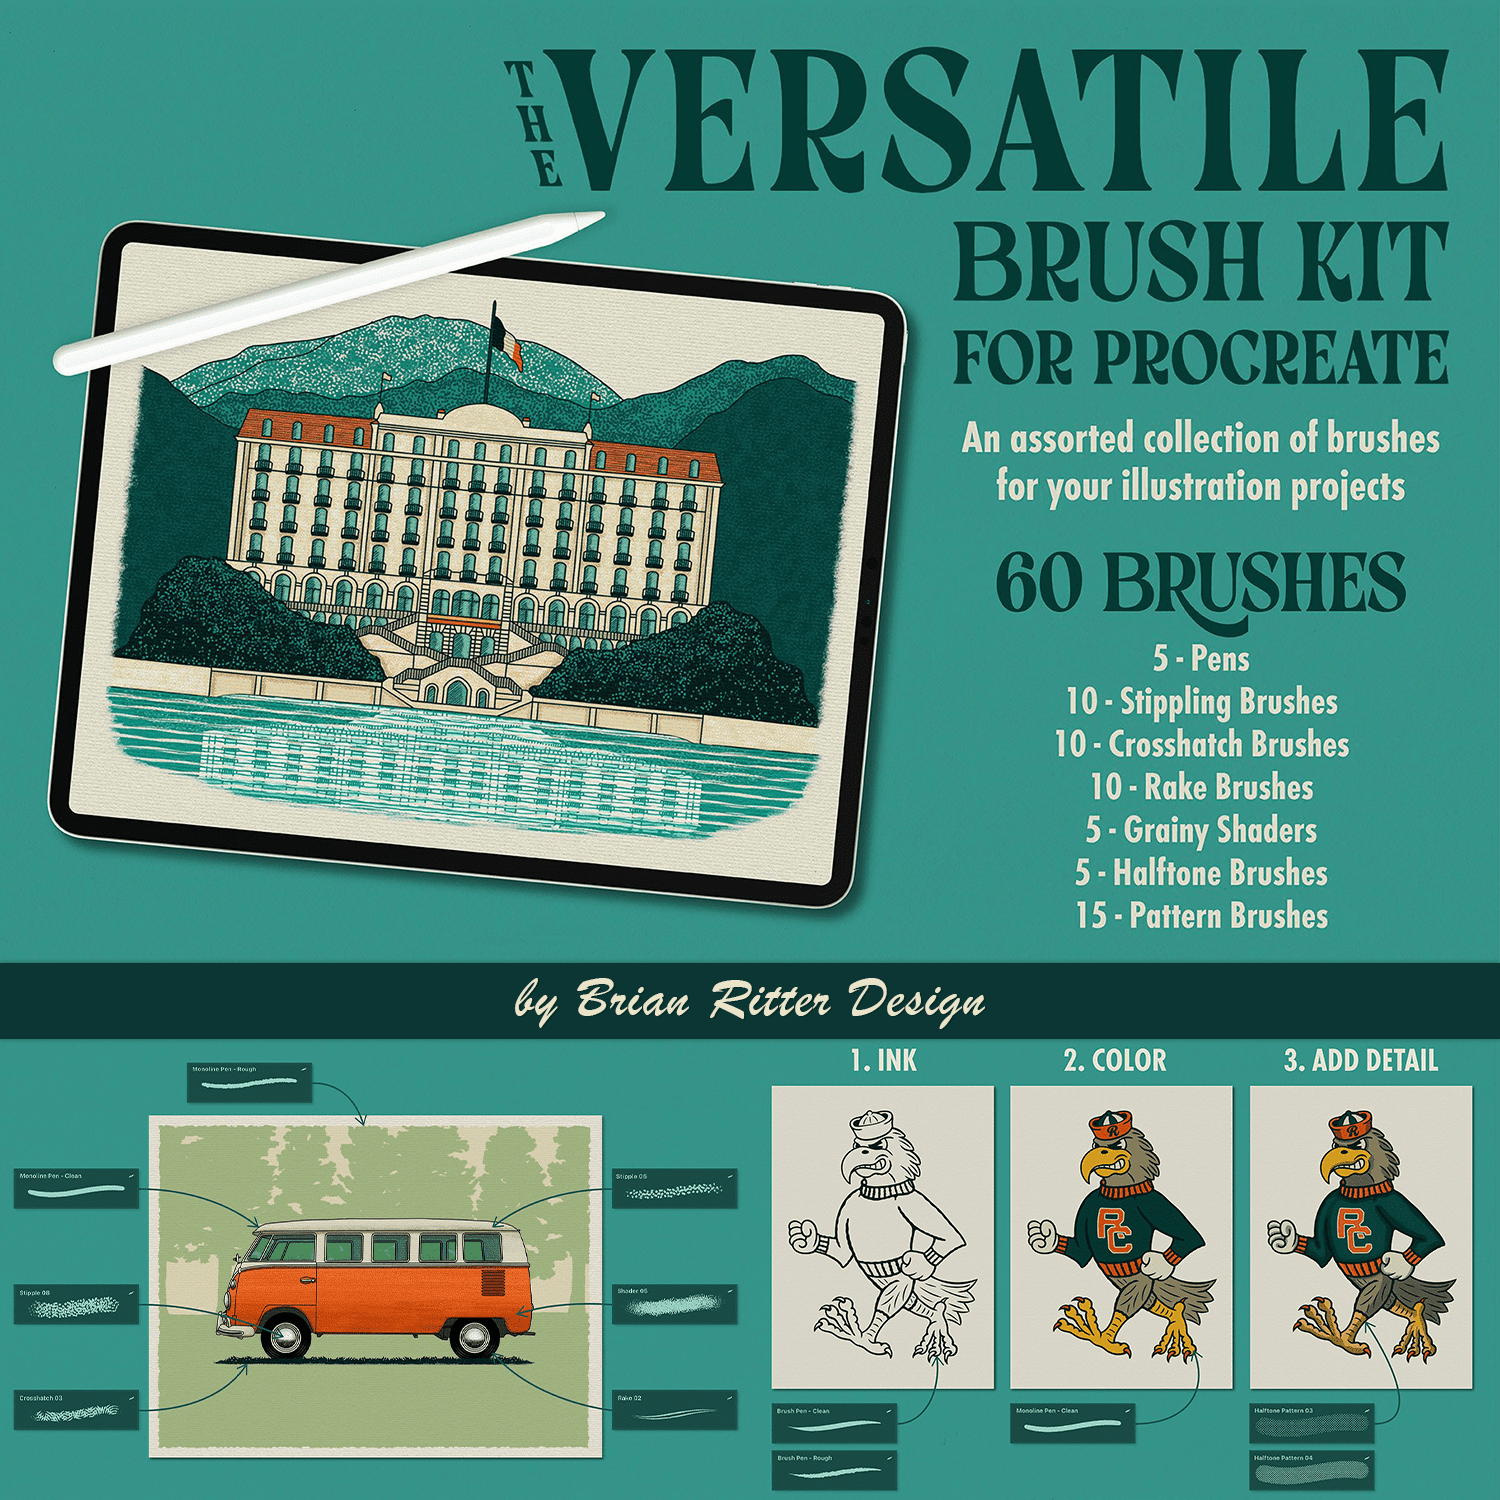 Versatile Brush Kit for Procreate cover.